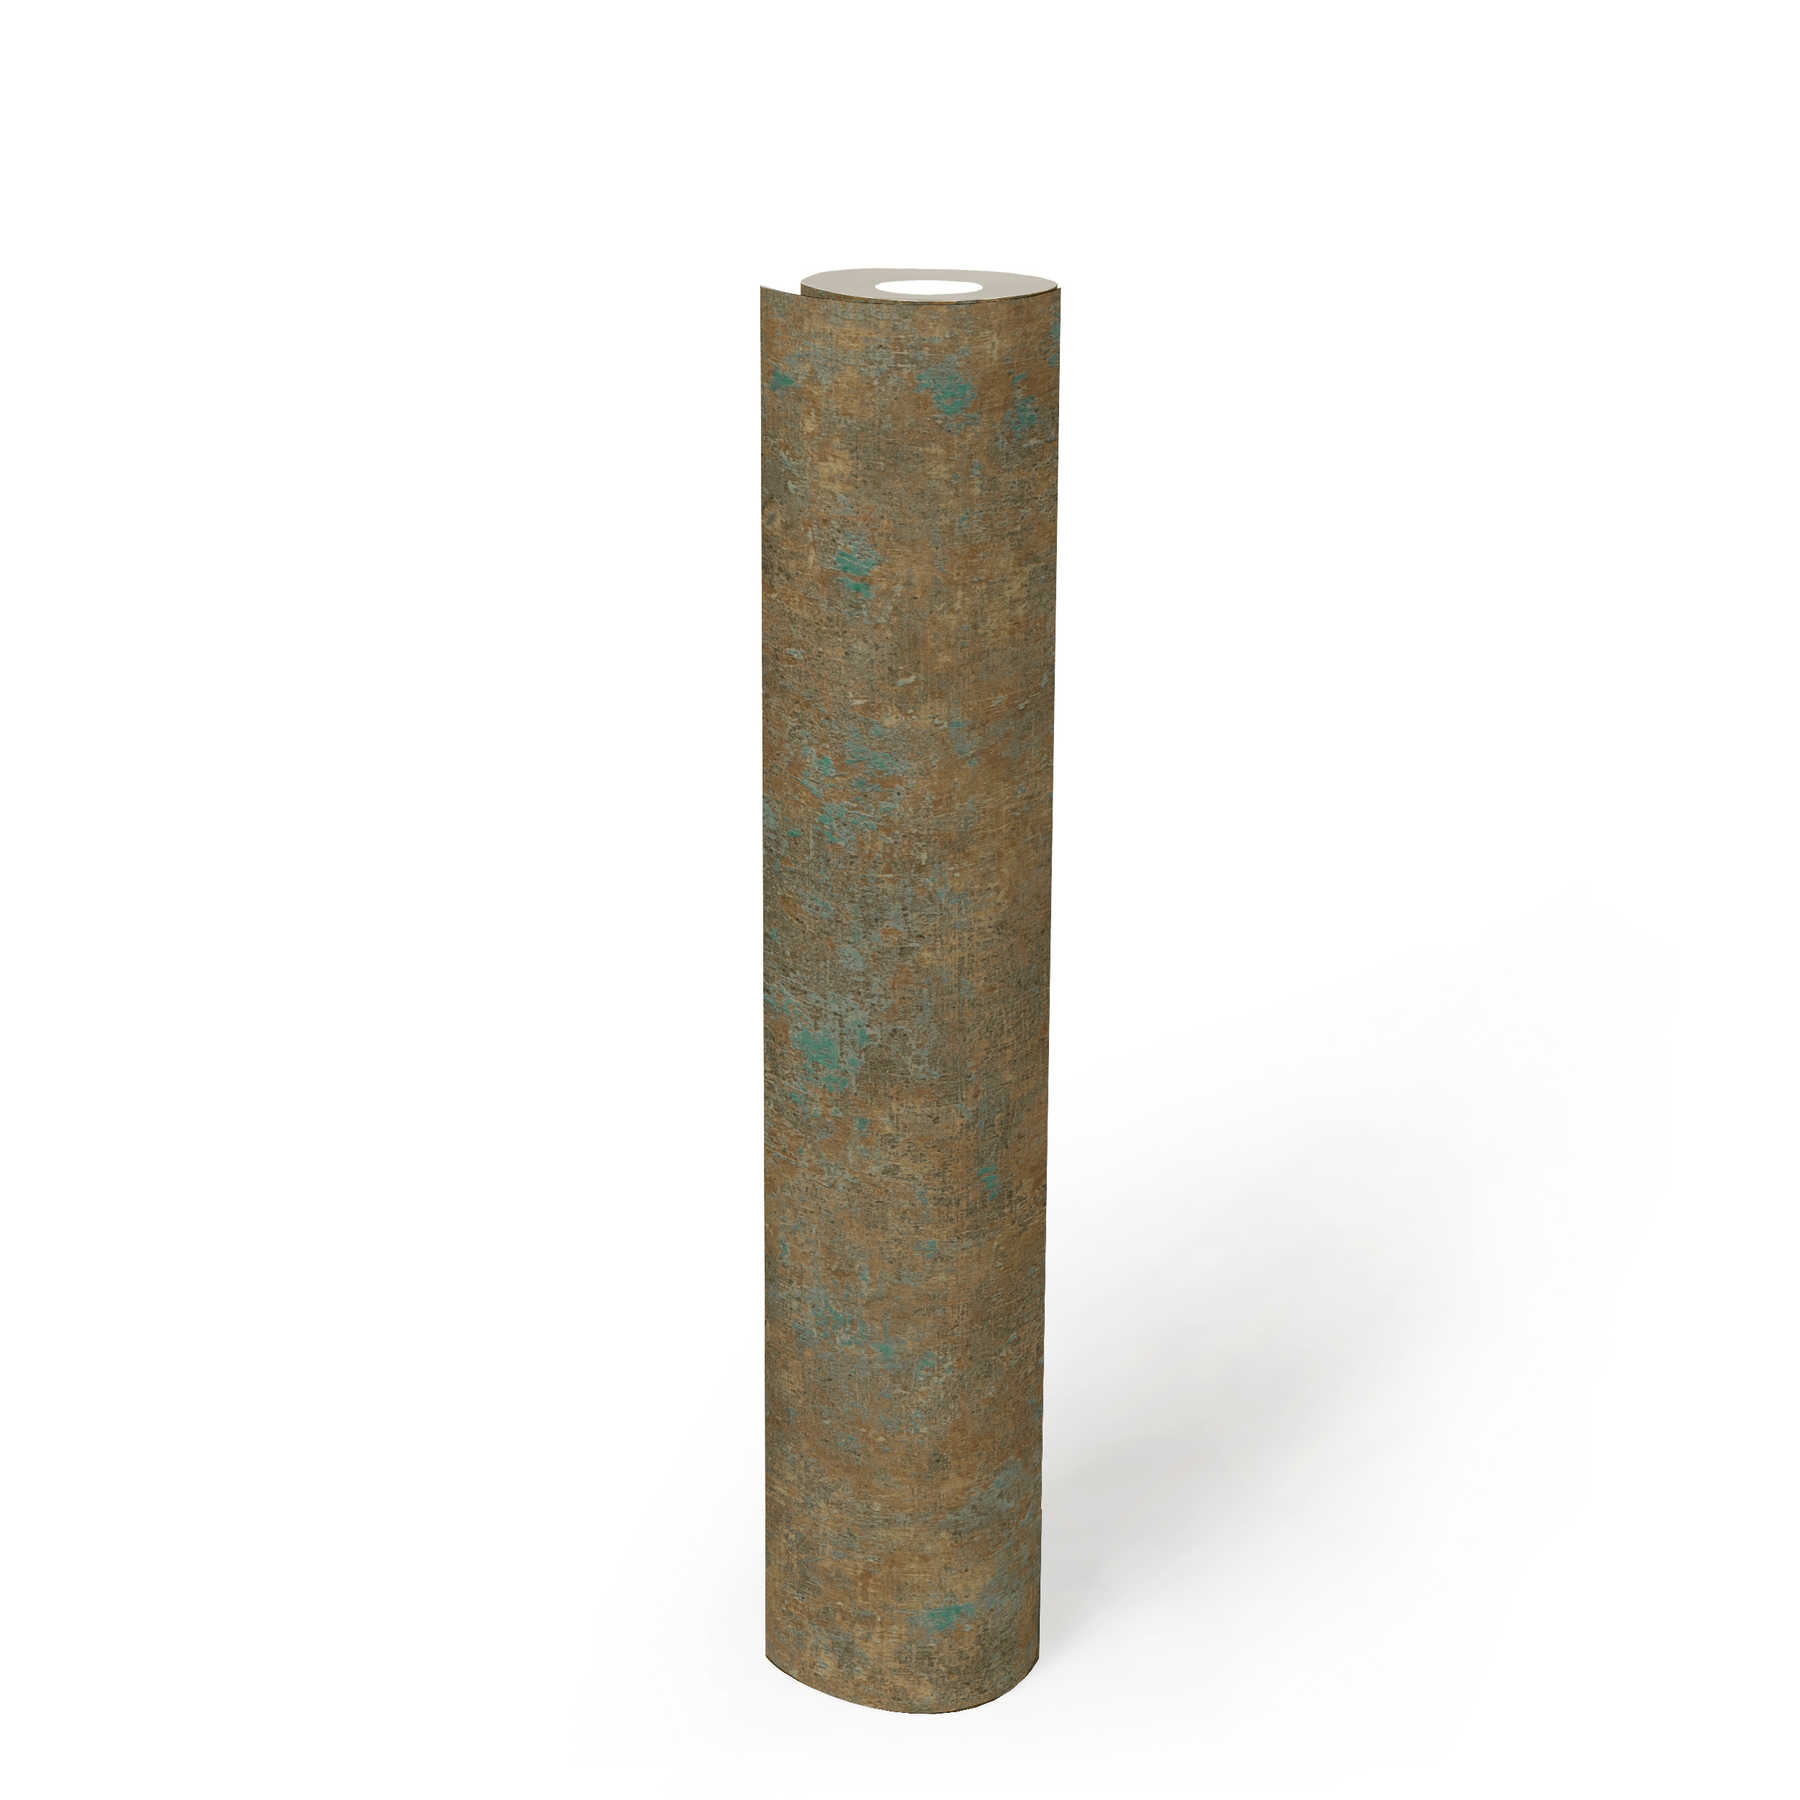             Papier peint uni avec motifs en couleur, look usé - bronze, pétrole, marron
        